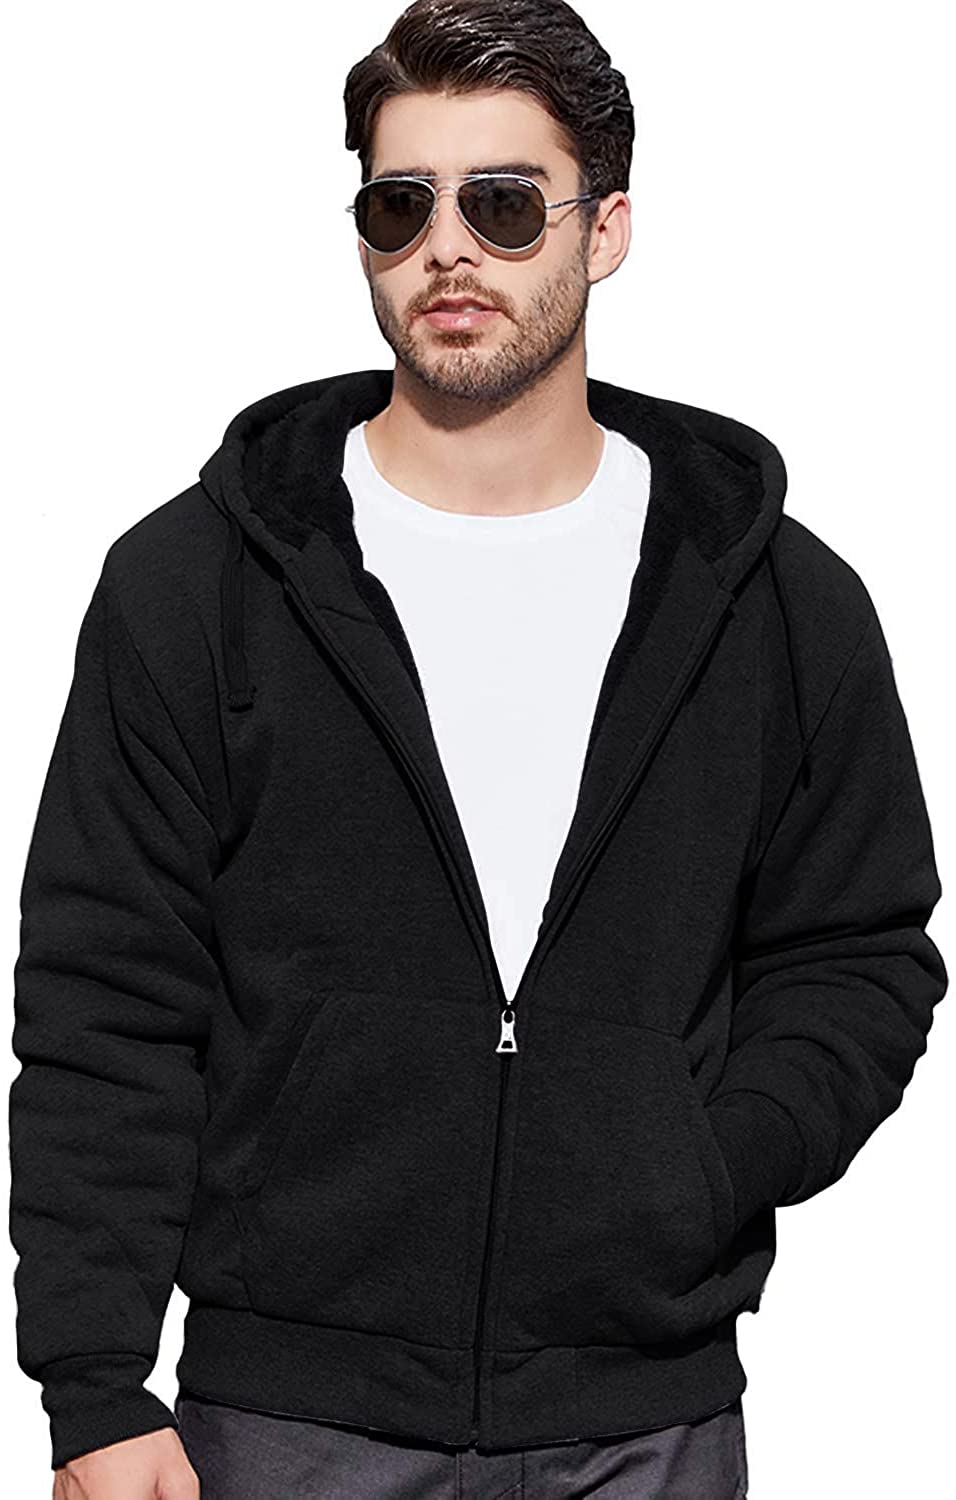 Details about   GEEK LIGHTING Hoodies for Men Heavyweight Fleece Sweatshirt - Full Zip Up Thick  